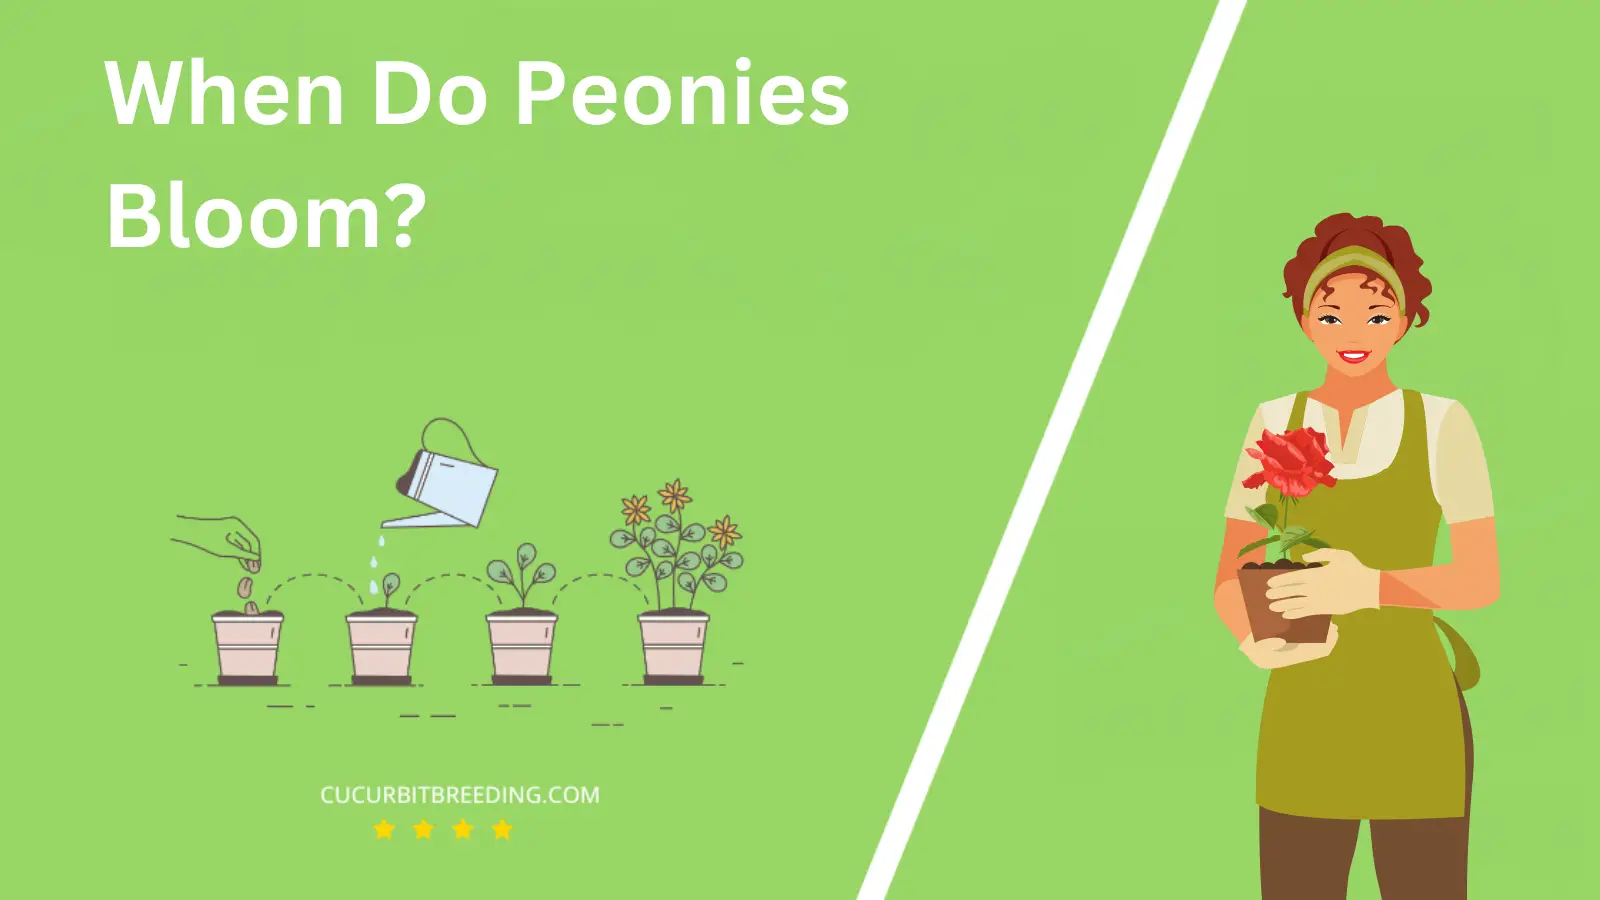 When Do Peonies Bloom?